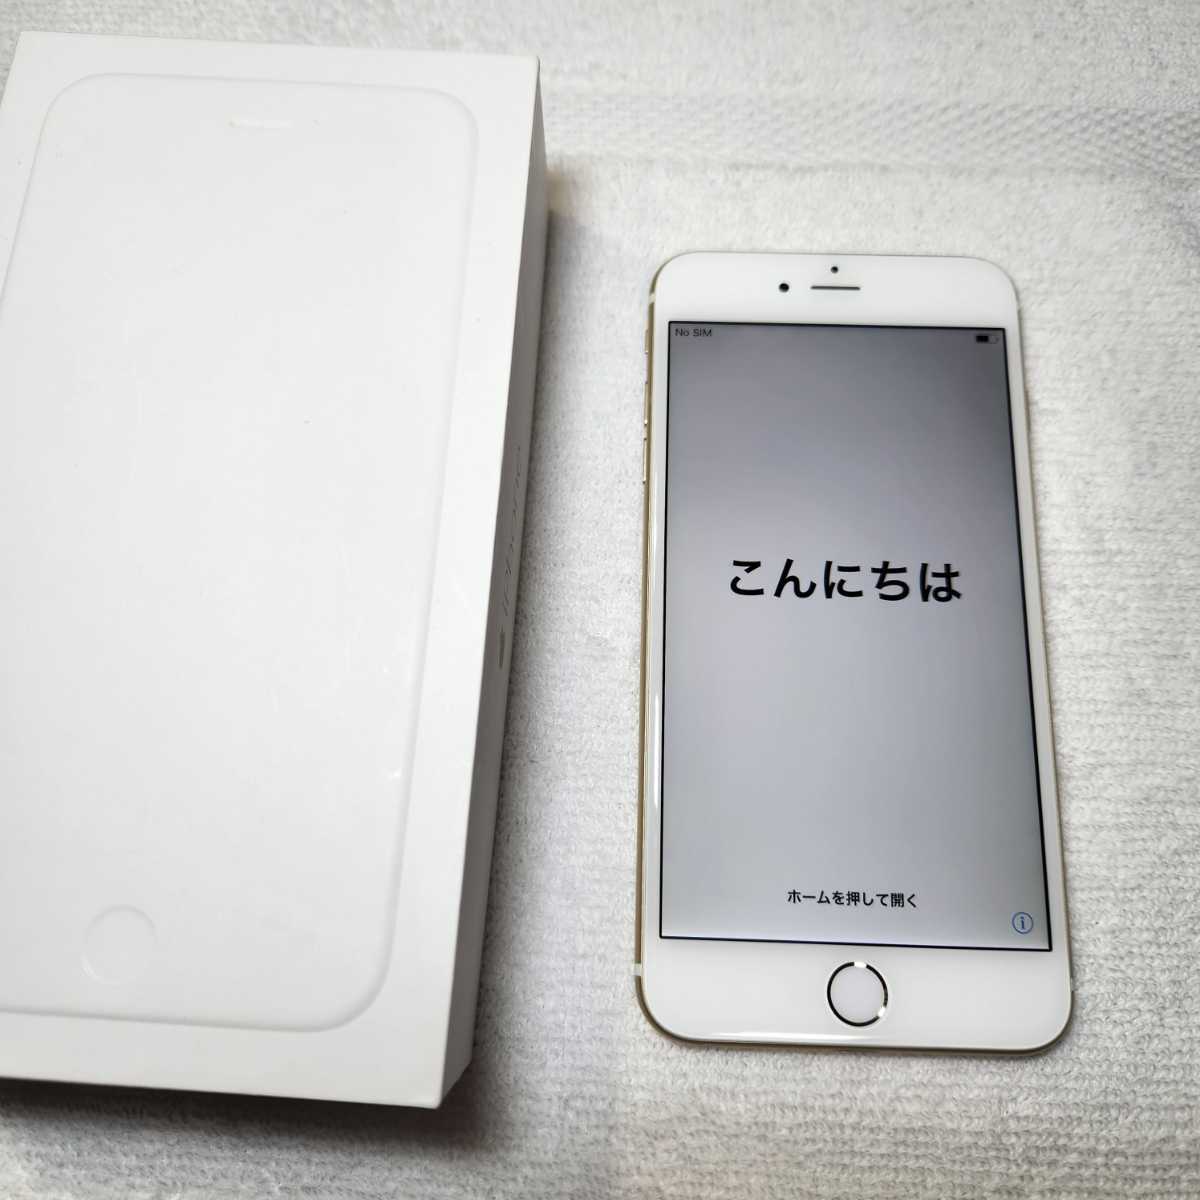 専門ショップ iPhone 6 (Gold) 64GB Plus iPhone - husbandsrealestate.com